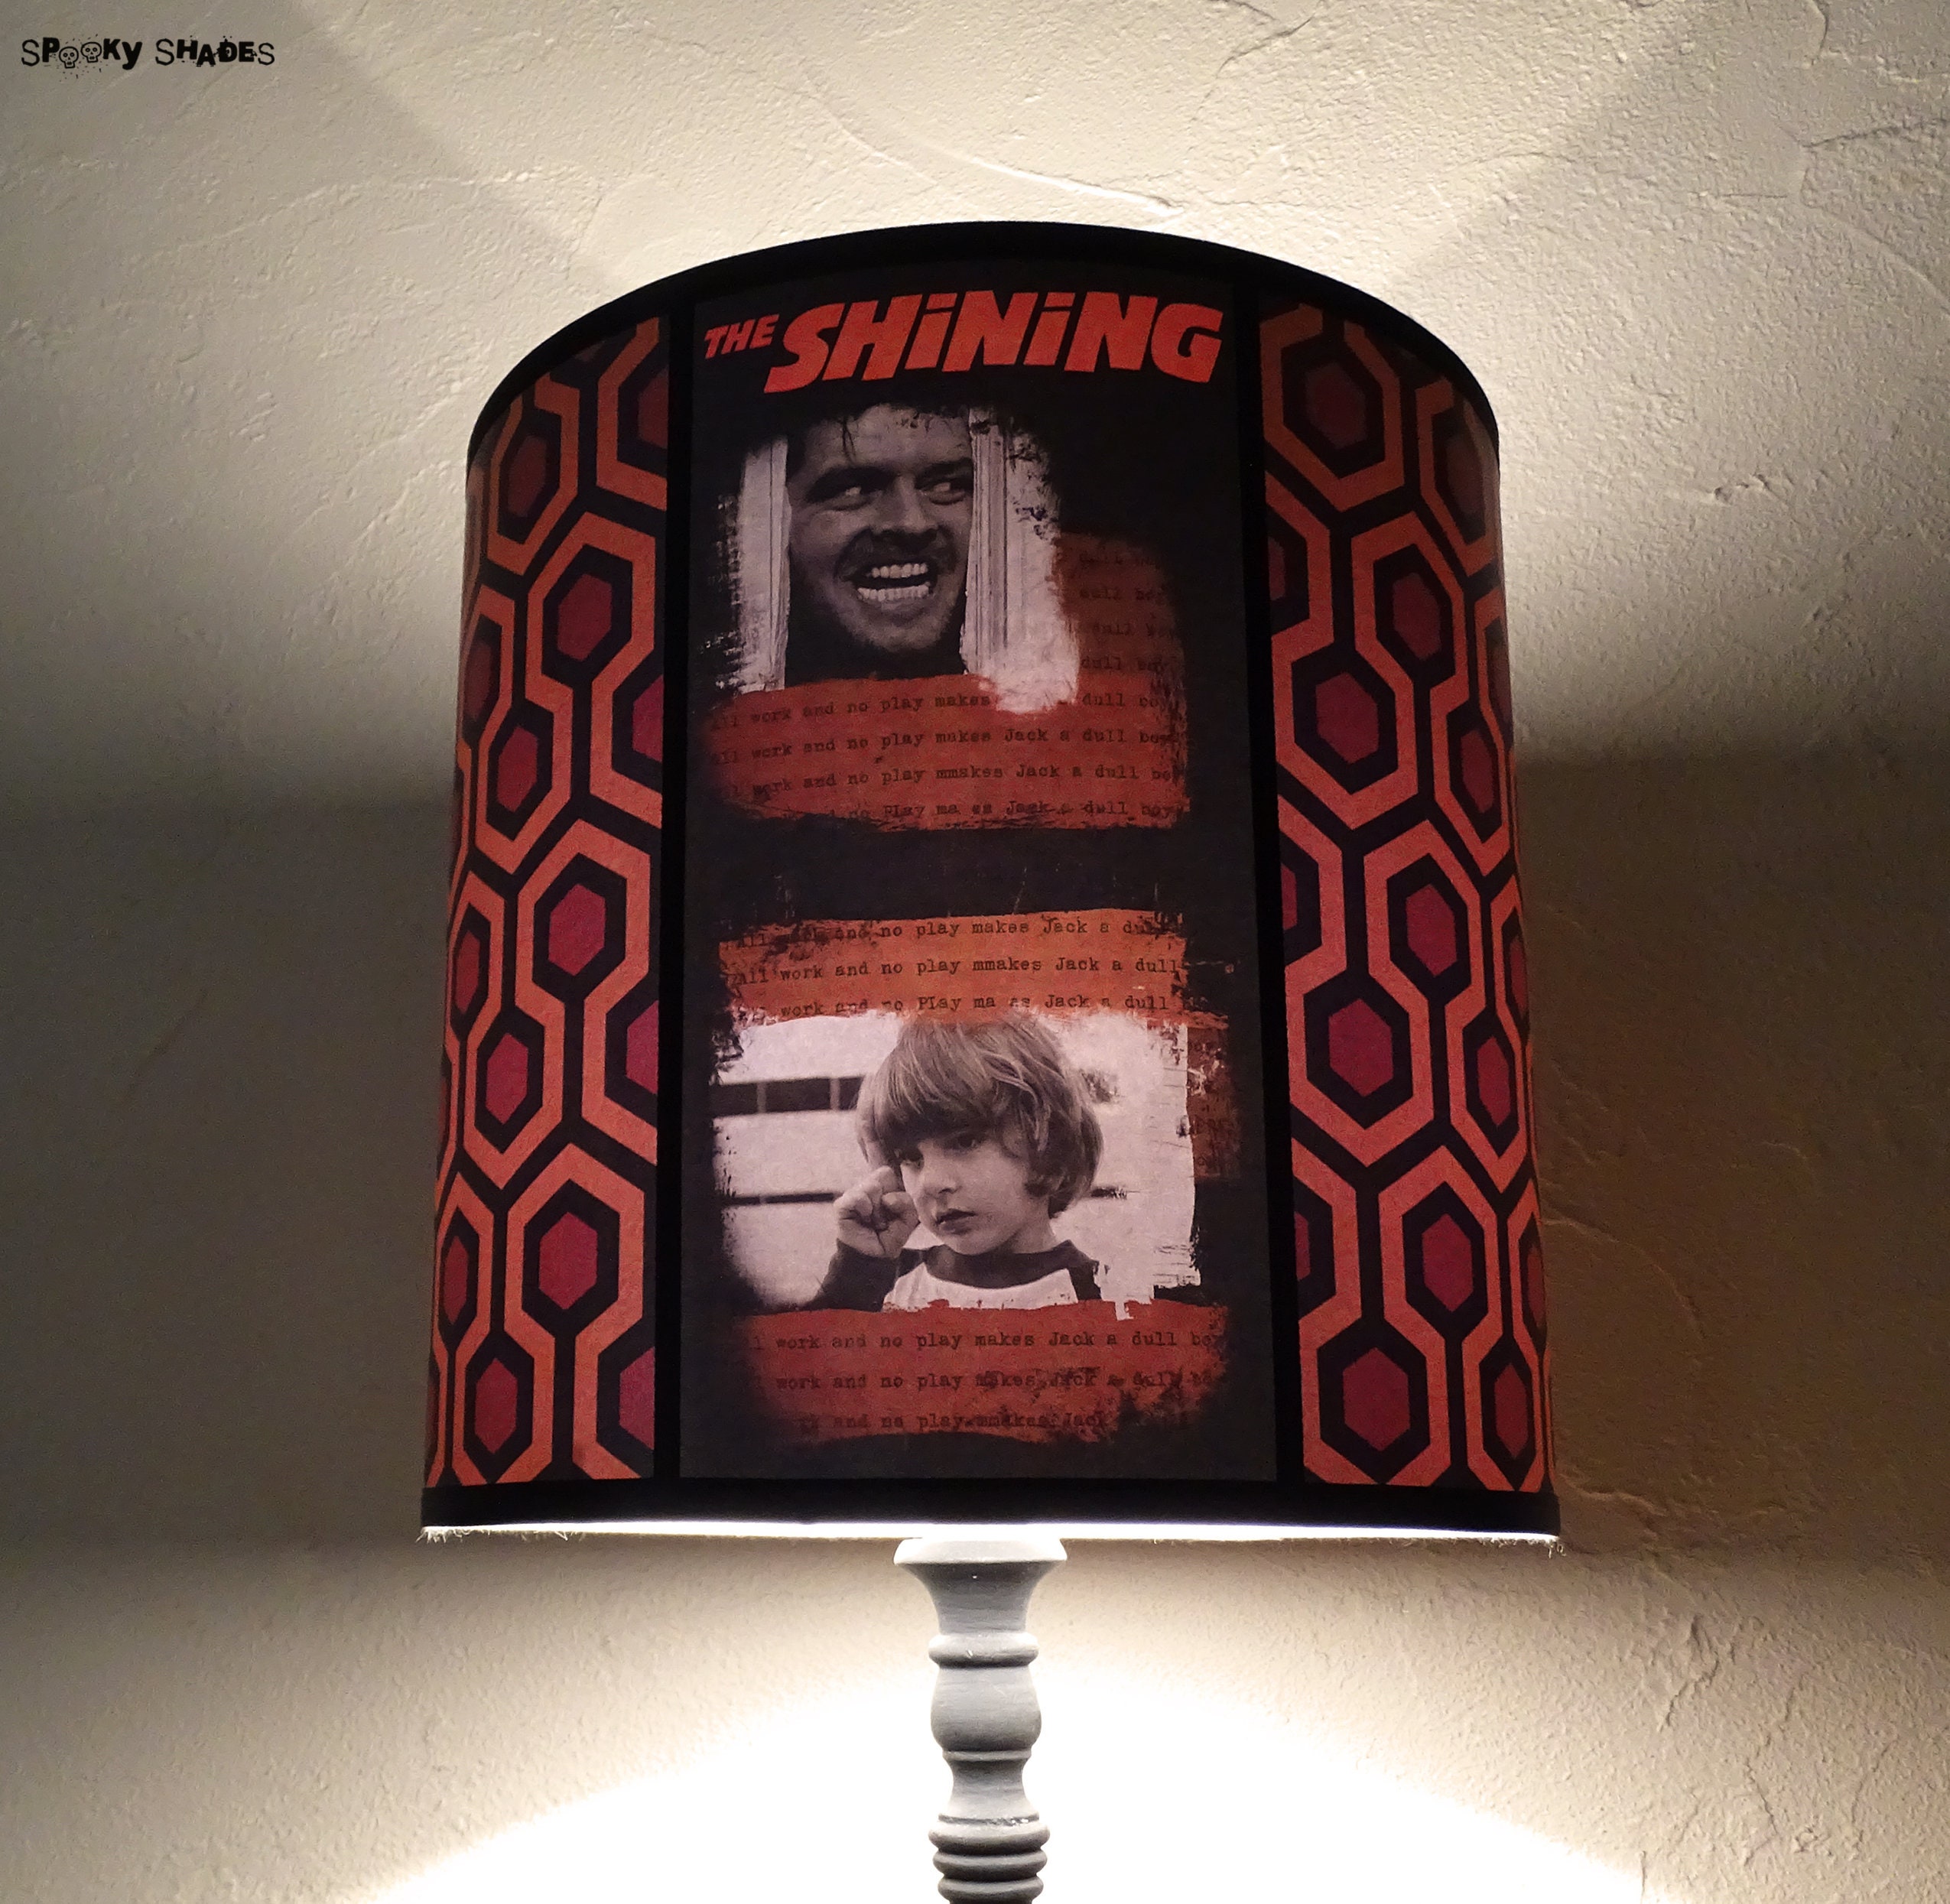 Abat Jour Cylindre Pour Lampe à Poser Shining - The Shining, Film d'horreur, Abat-Jour Rouge, Cadeau